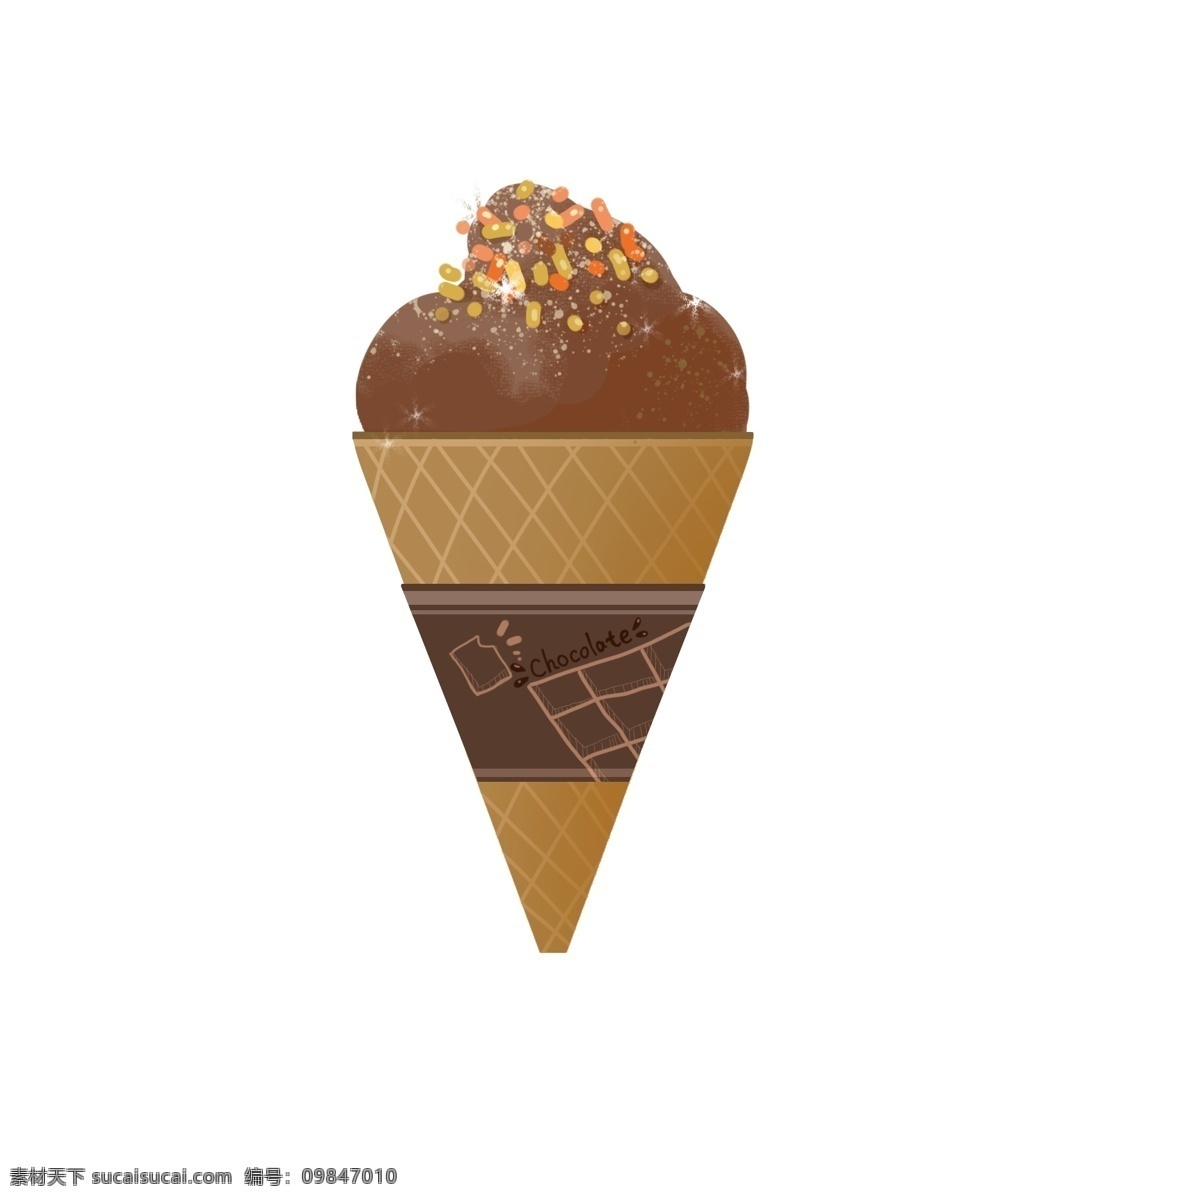 褐色冰激凌 雪糕 卡通 夏日 凉爽 简洁 手绘 褐色